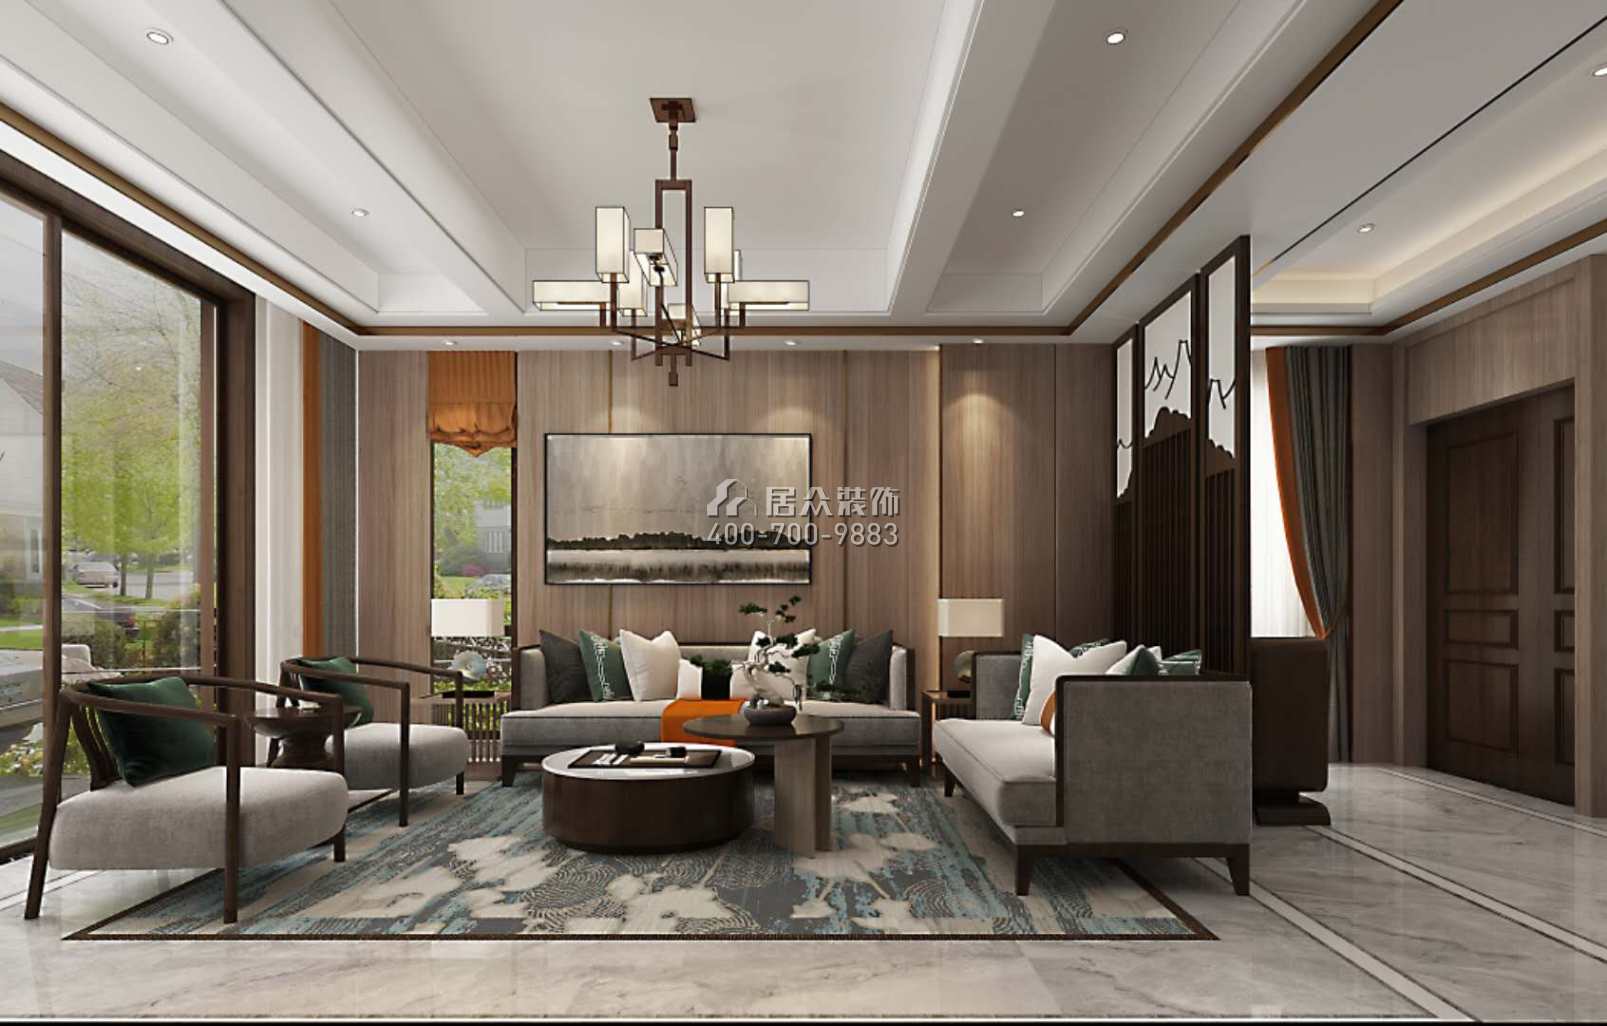 常德碧桂園300平方米中式風格別墅戶型客廳裝修效果圖